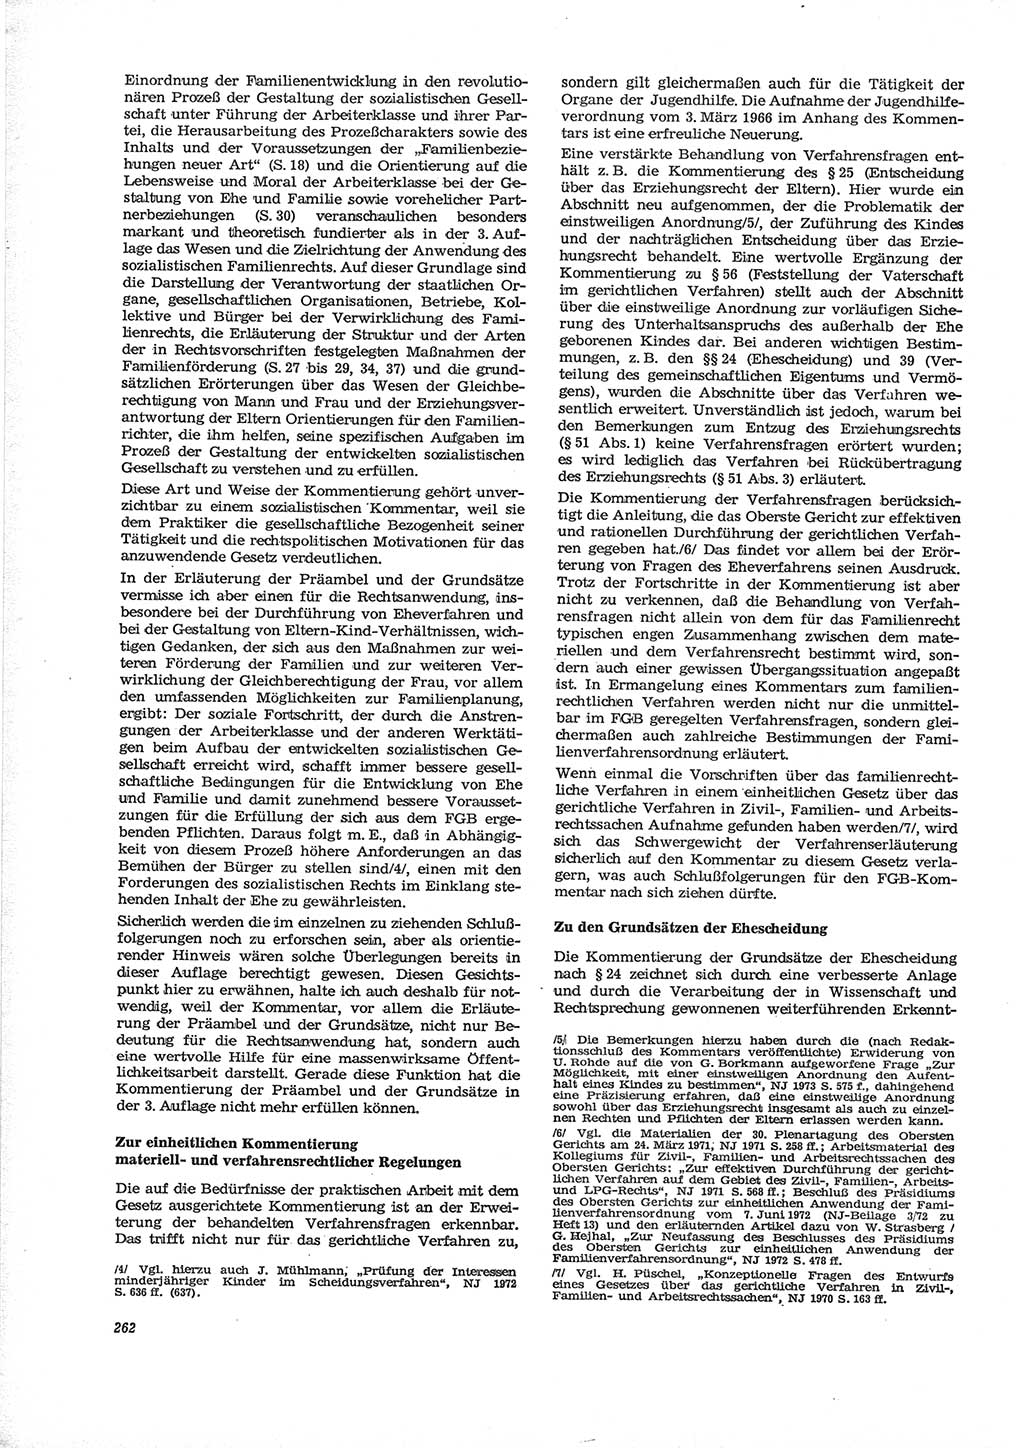 Neue Justiz (NJ), Zeitschrift für Recht und Rechtswissenschaft [Deutsche Demokratische Republik (DDR)], 28. Jahrgang 1974, Seite 262 (NJ DDR 1974, S. 262)